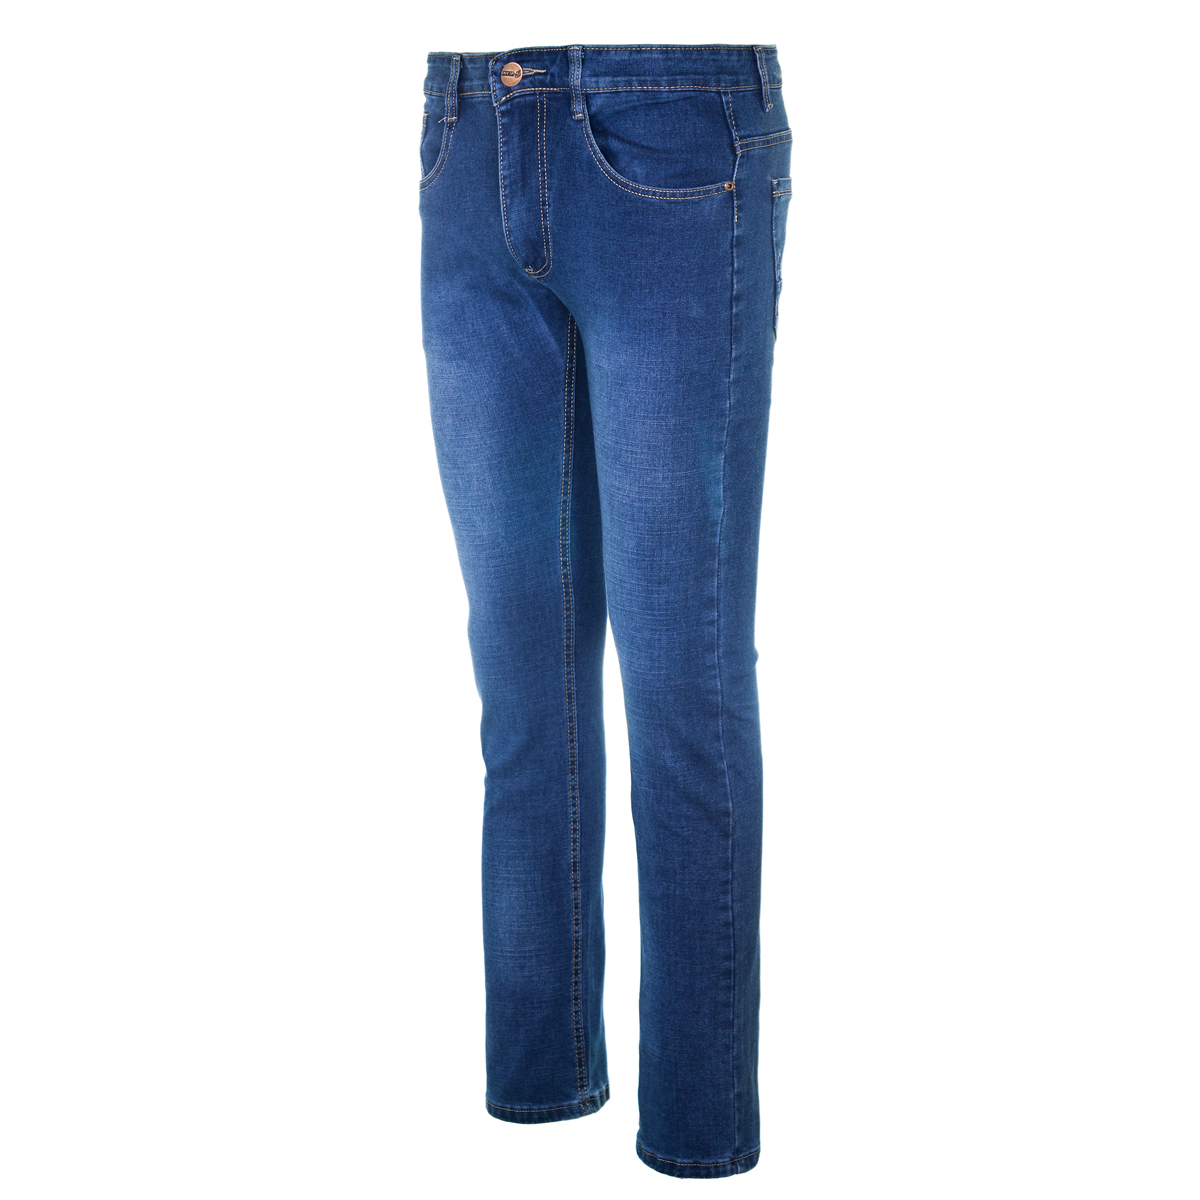 Муж. джинсы арт. 12-0091 Синий р. 29 Китай, размер 29 - фото 2